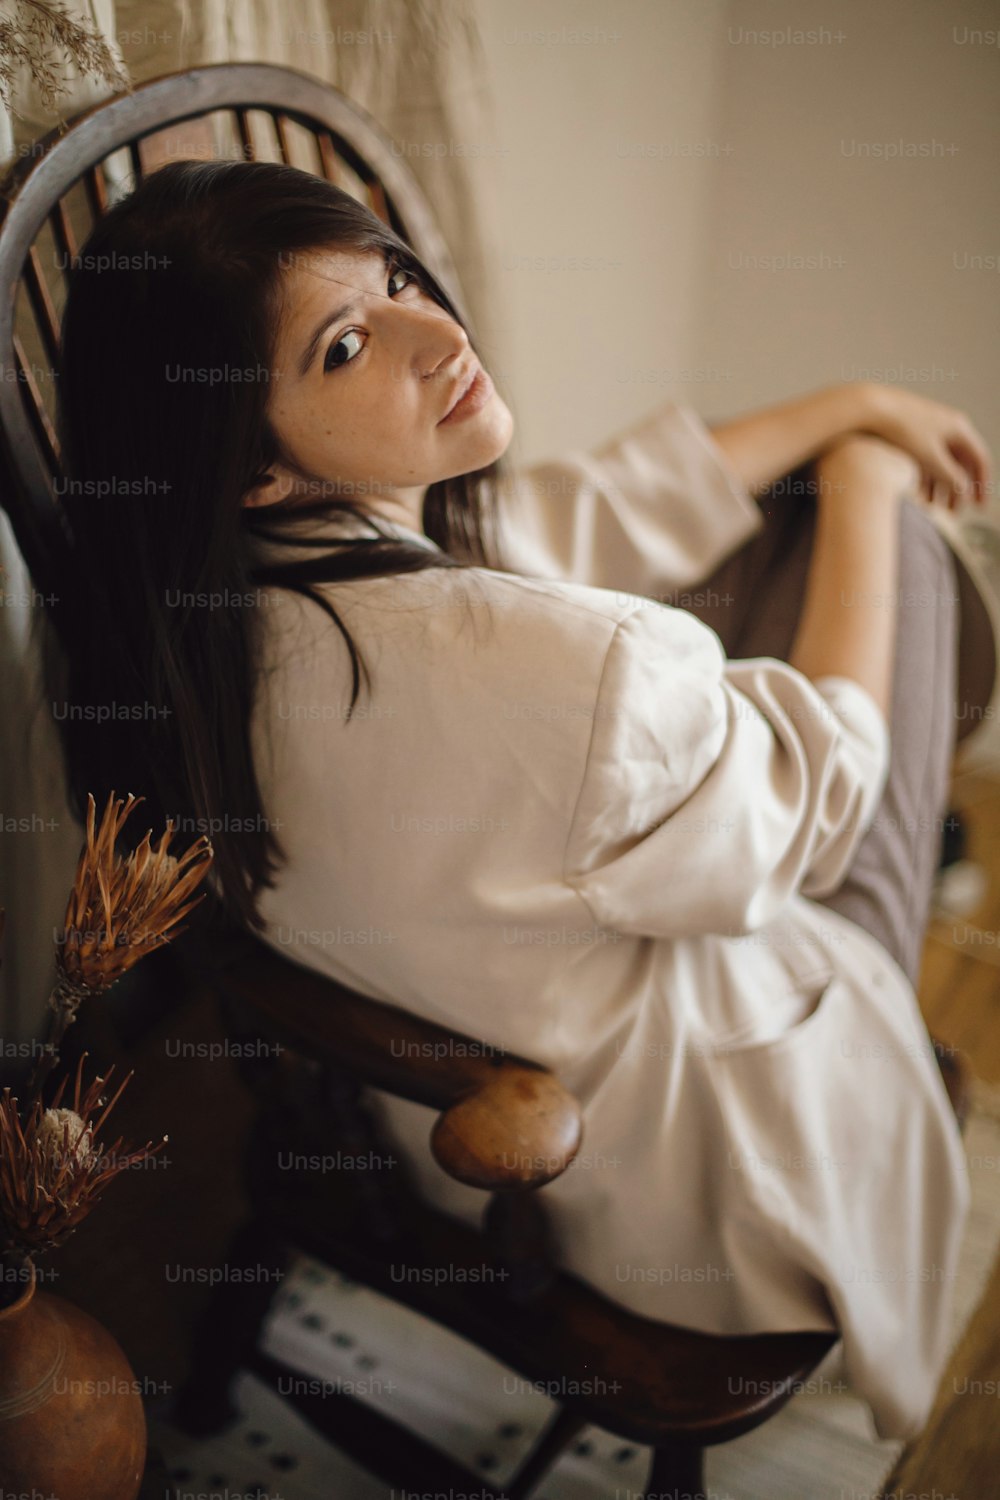 Hermosa mujer elegante en traje sentada en una silla de madera retro en una habitación de estilo bohemio de fondo con hierba seca y flores en jarrón. Joven mujer de moda posando en interior boho pastel